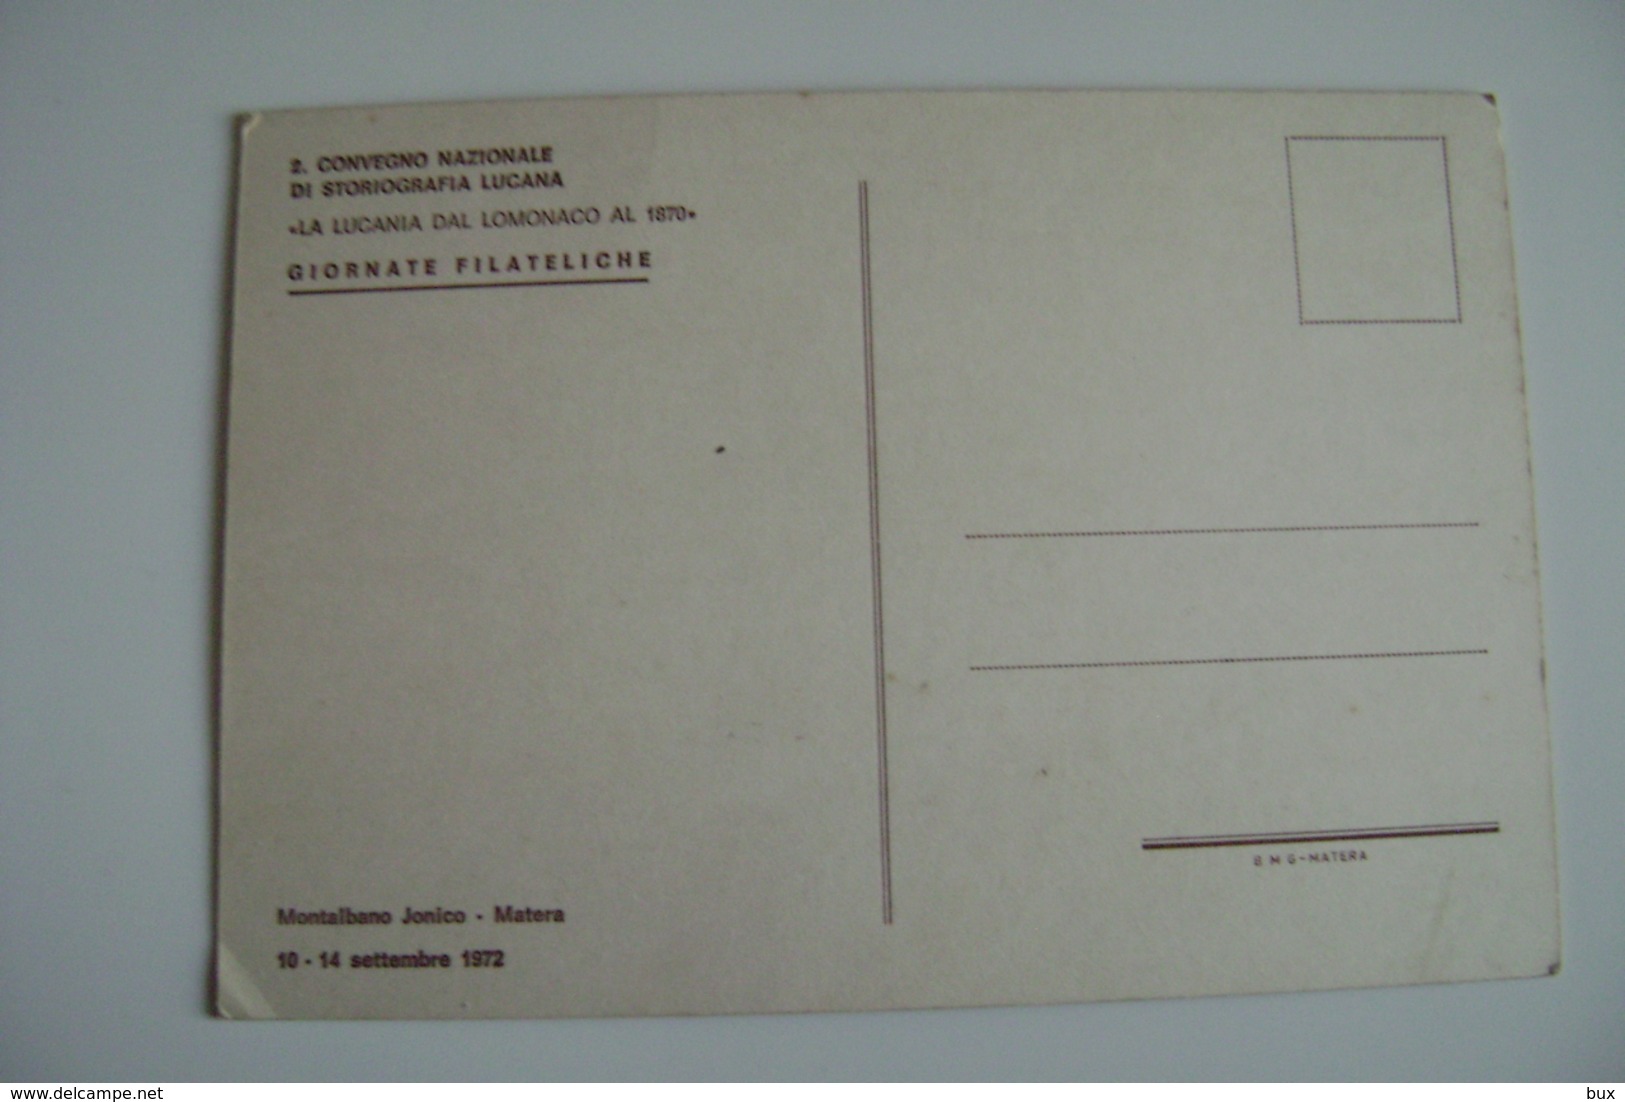 1972 MONTALBANO JONICO  MATERA  CONVEGNO  LA LUCANIA NEL MONDO   EVENTO MANIFESTAZIONE  FILATELICA - Francobolli (rappresentazioni)